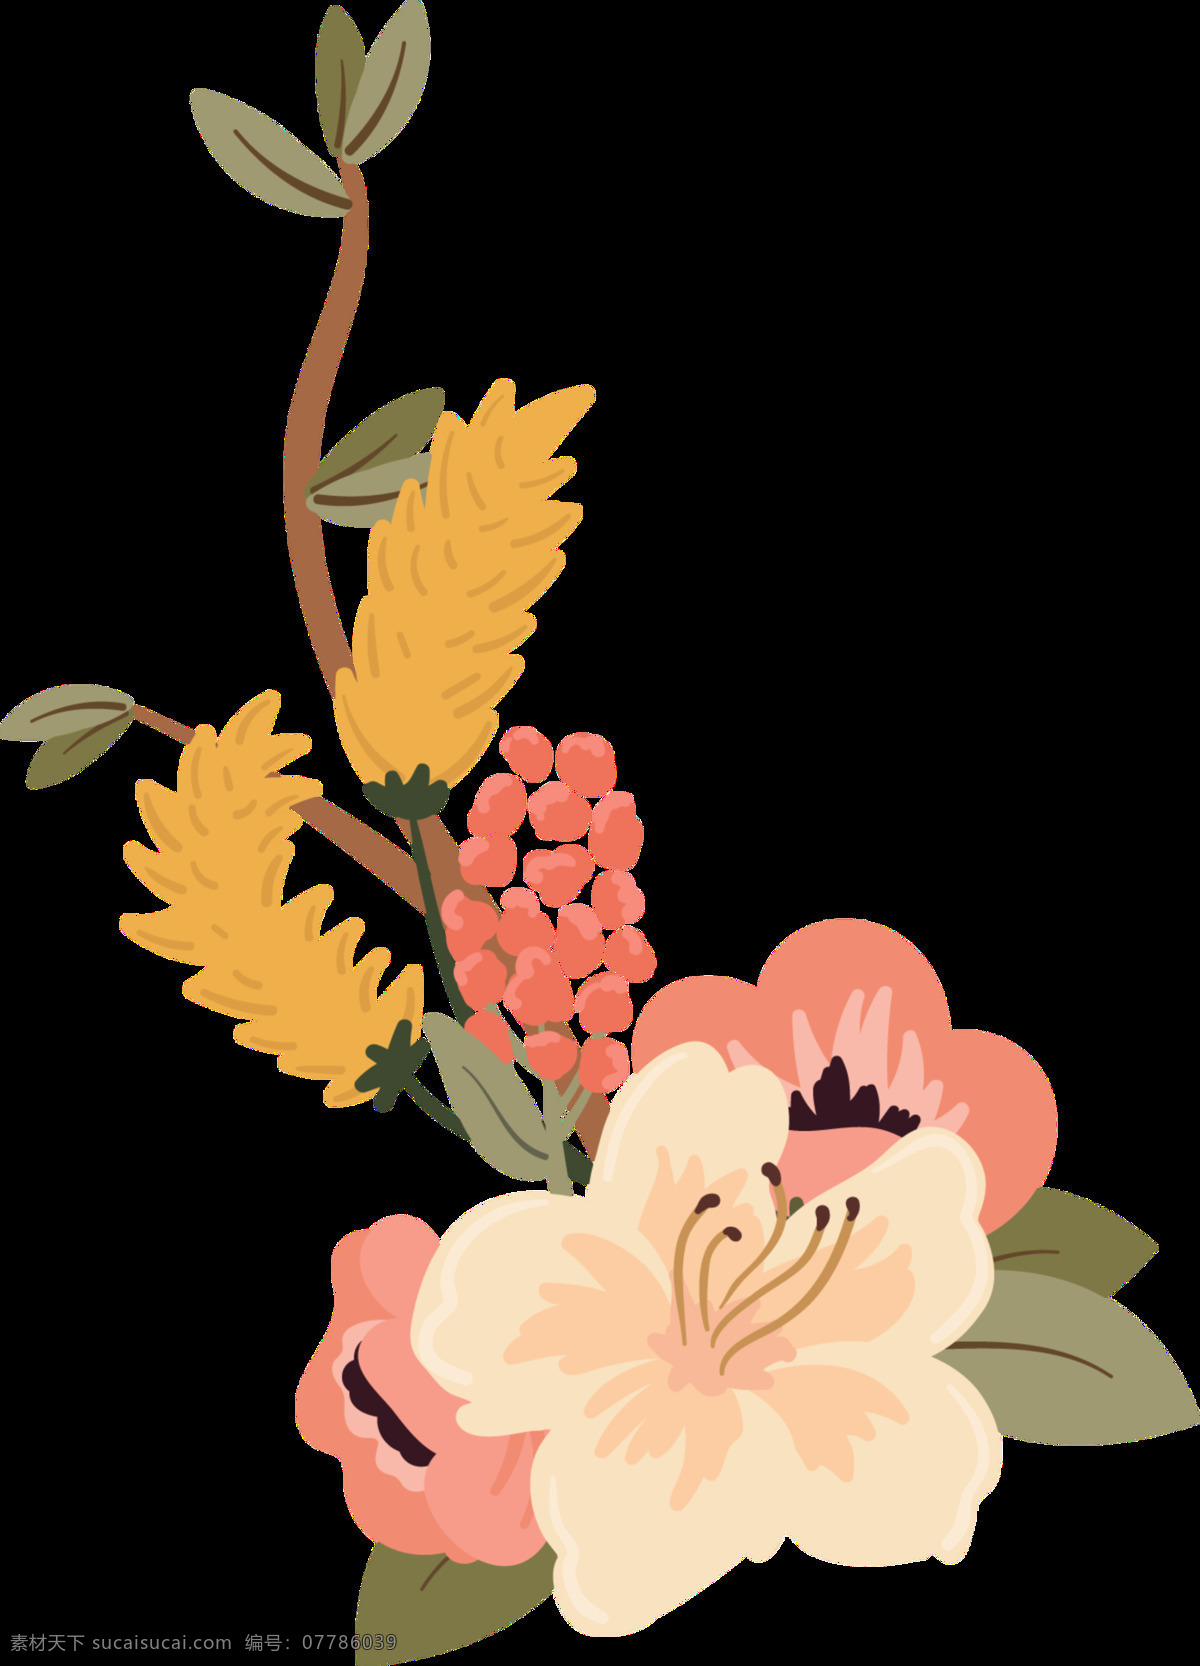 朝气蓬勃 花卉 透明 盛开 卡通 抠图专用 装饰 设计素材